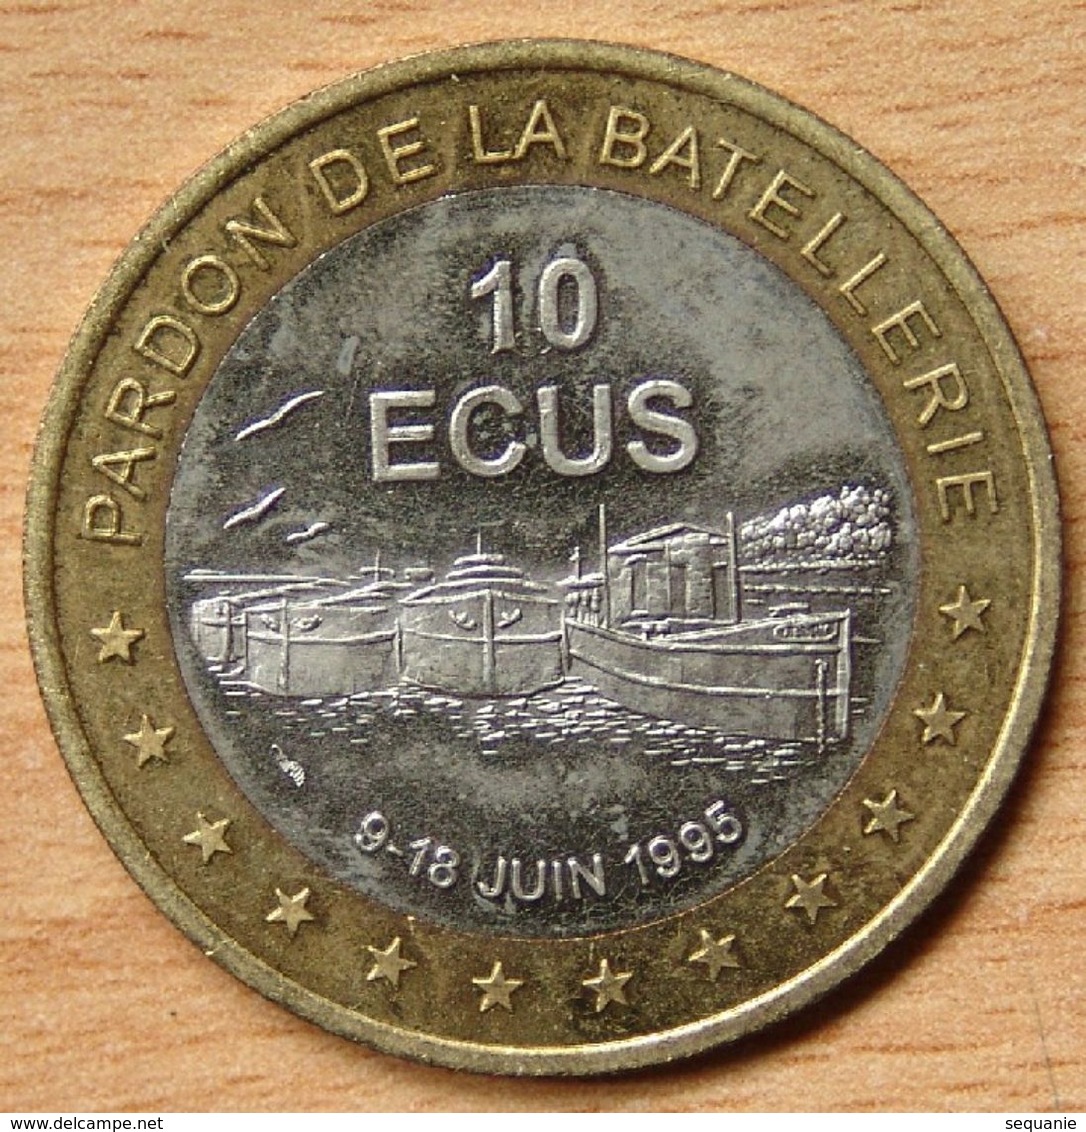 France 10 Ecus 1995 Bimétallique Conflans-Sainte-Honorine (78)/ Pardon De La Batellerie / - Euros Des Villes